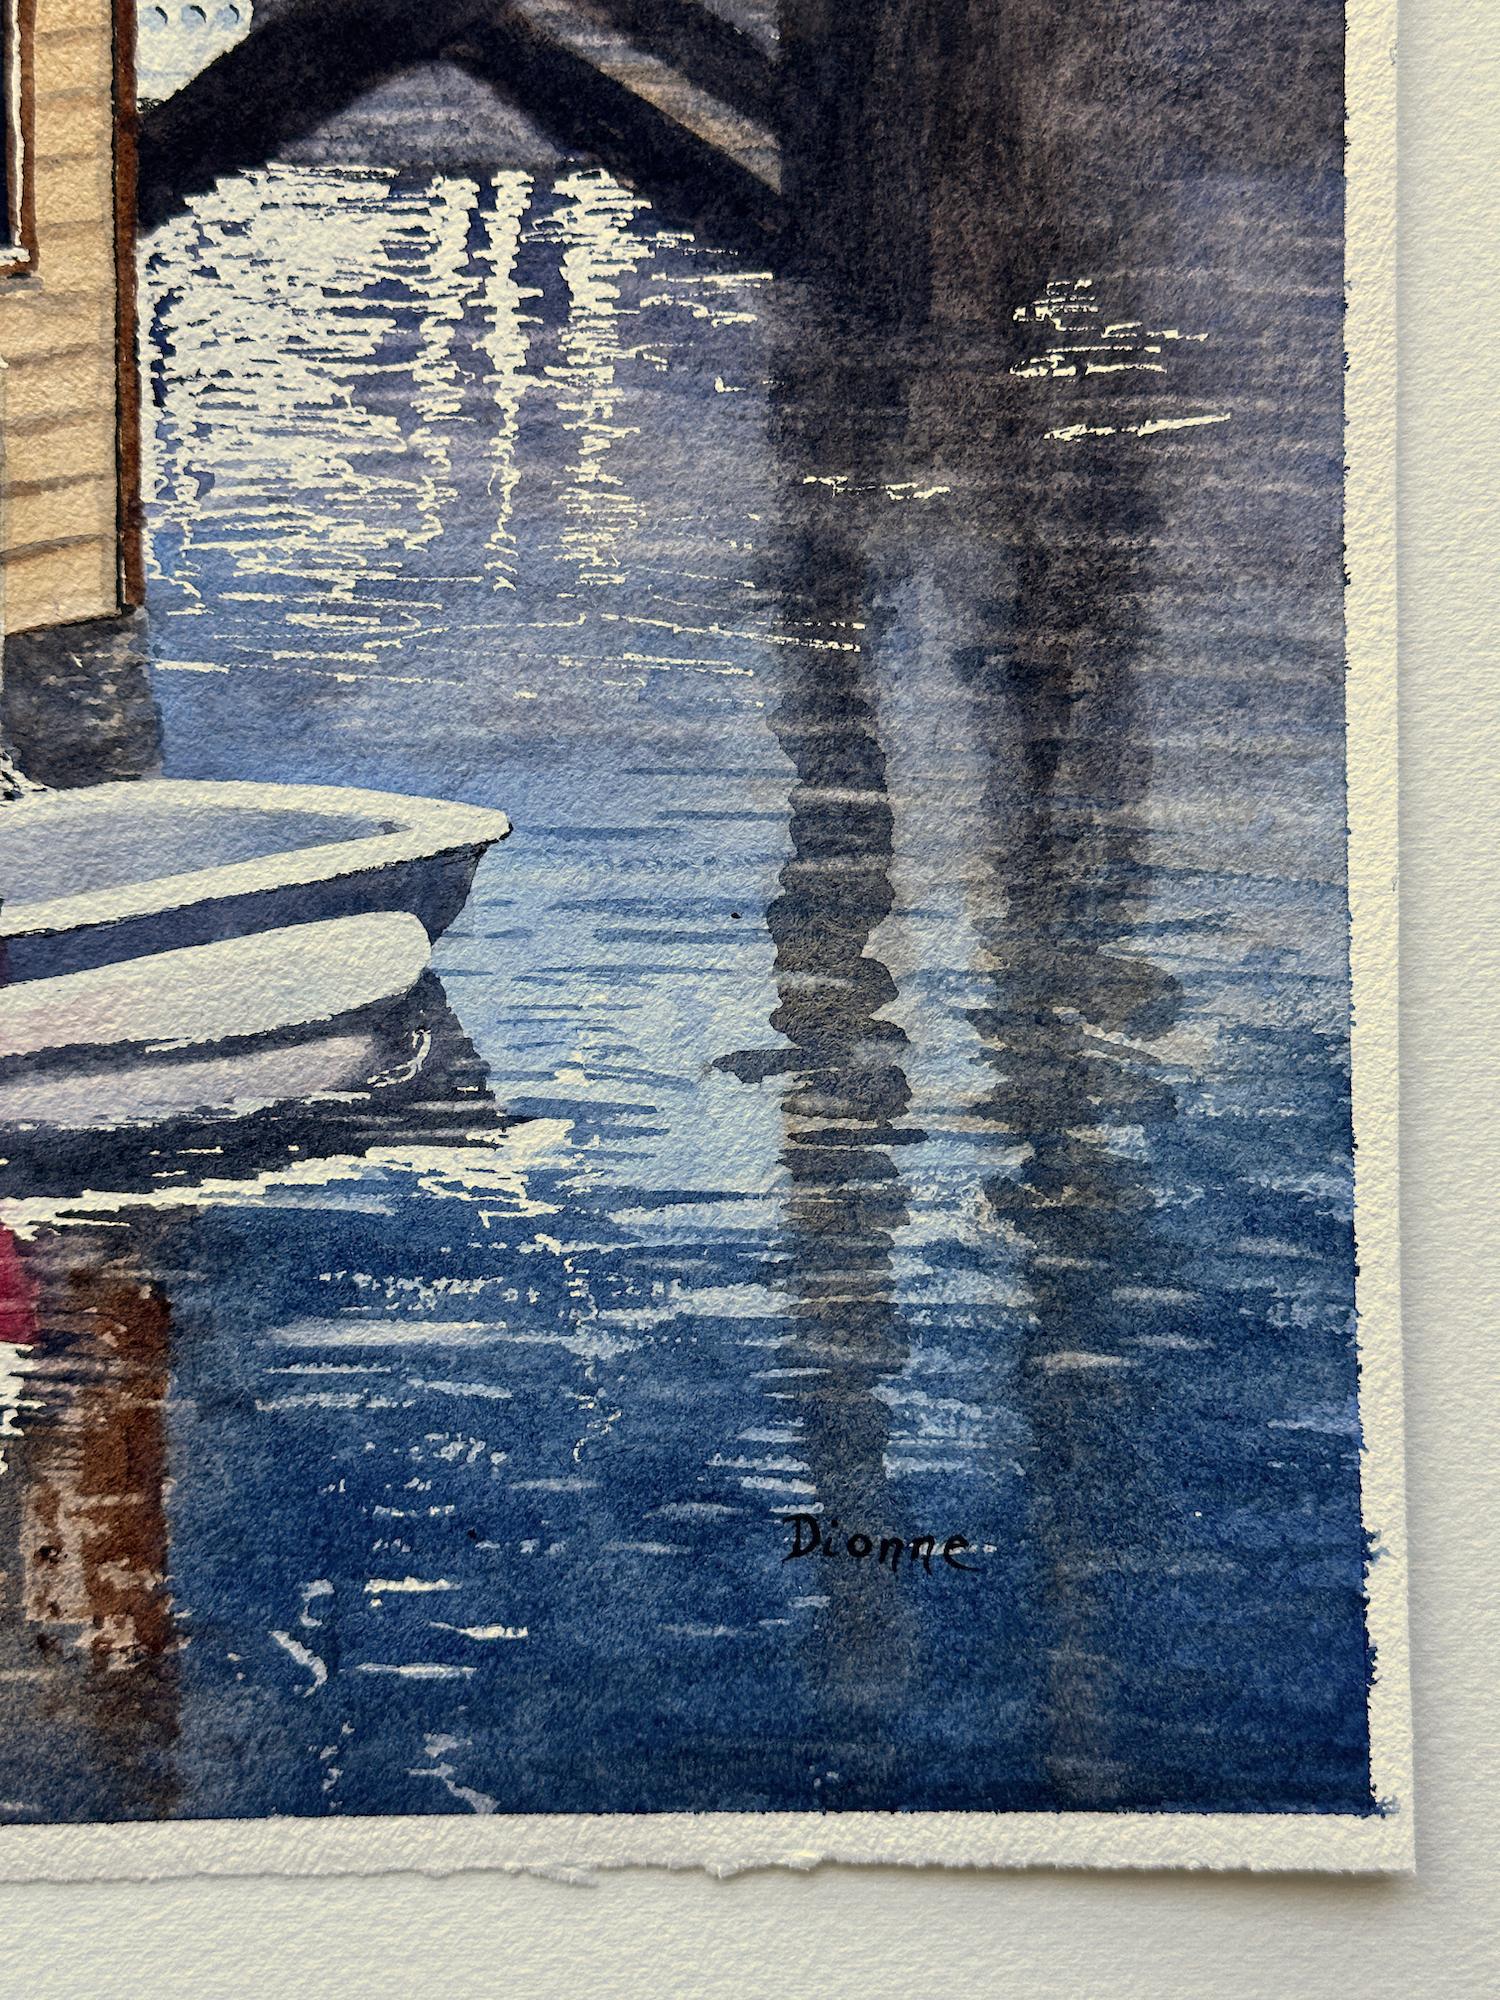 <p>Kommentare des Künstlers<br>Inspiriert von einem Bootshaus, das im Coal Harbour in Vancouver auf dem Wasser schwimmt, malt der Künstler Maurice Dionne diese ruhige Aquarellszene. Im Vordergrund sind ein charmantes gelbes Haus und rot-weiße Canos